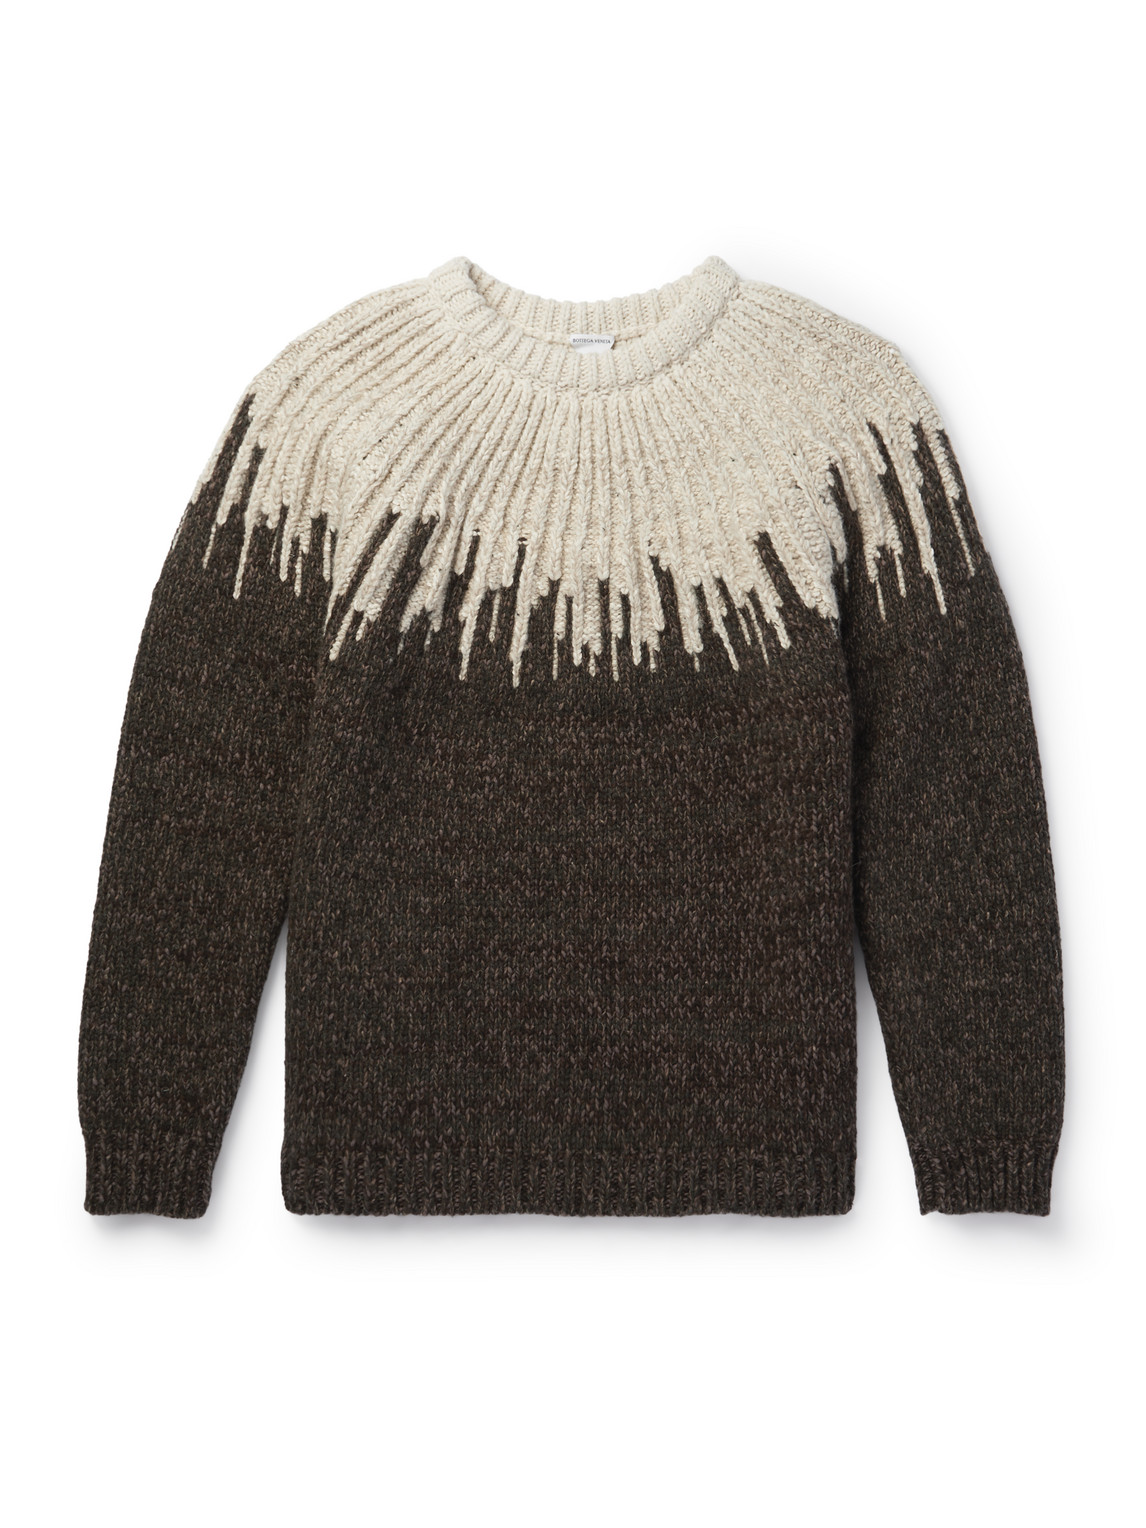 Jacquard-Knit Wool Sweater